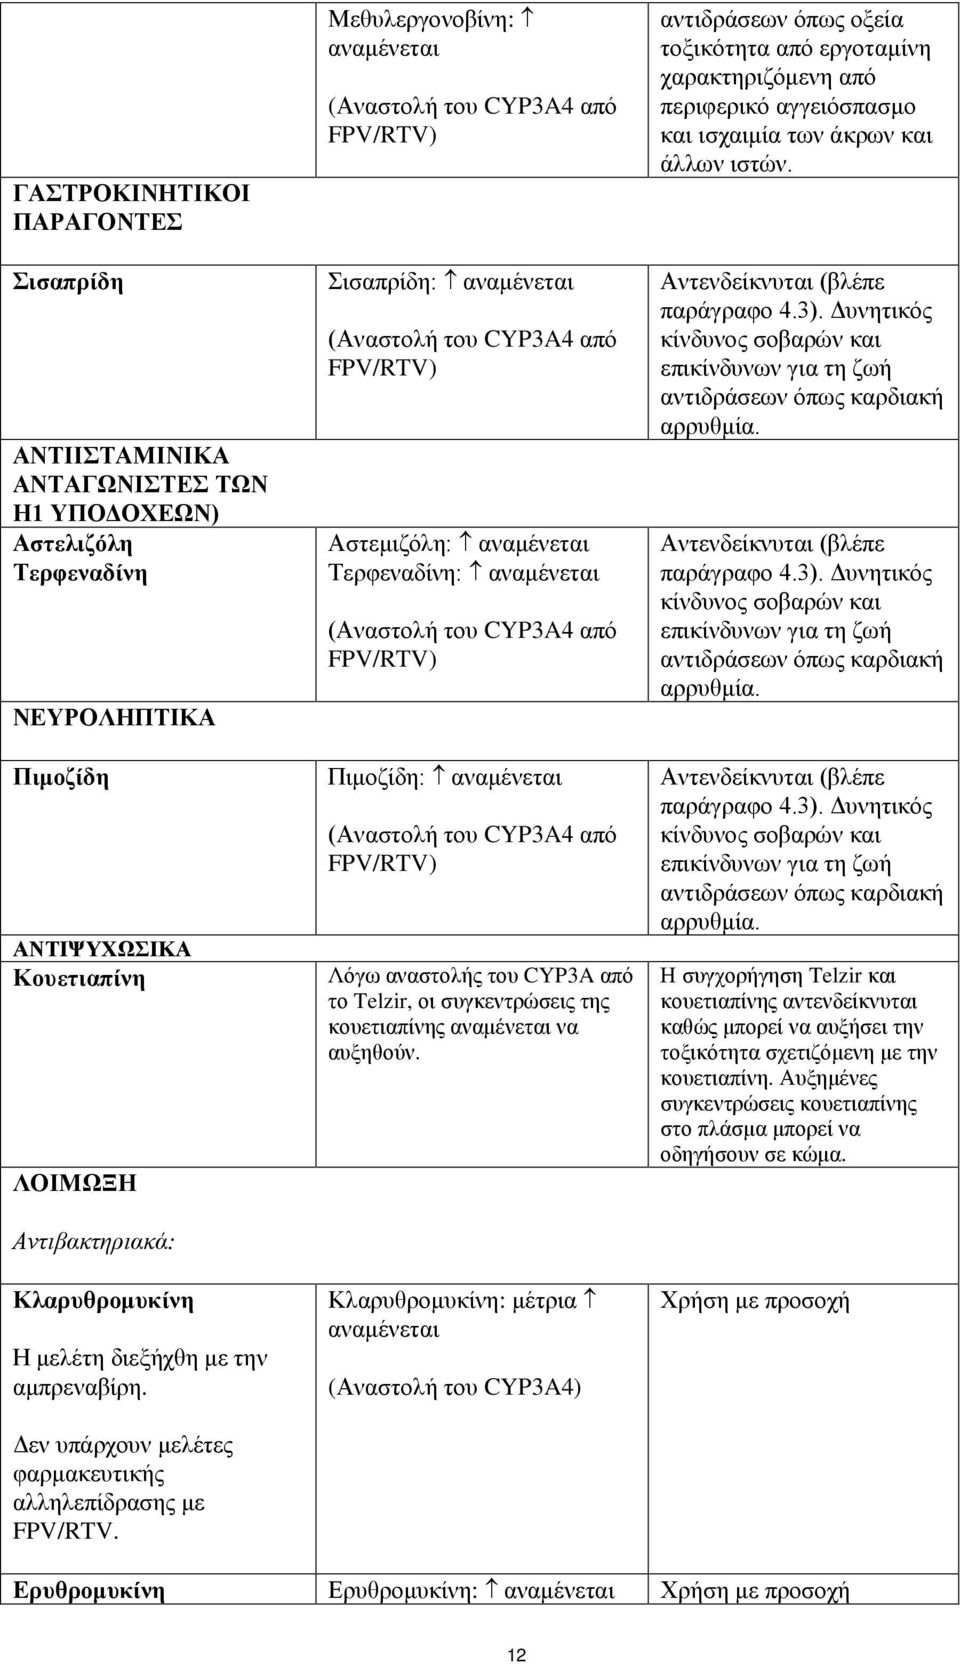 Μεθυλεργονοβίνη: αναμένεται (Αναστολή του CYP3A4 από FPV/RTV) Σισαπρίδη: αναμένεται (Αναστολή του CYP3A4 από FPV/RTV) Αστεμιζόλη: αναμένεται Τερφεναδίνη: αναμένεται (Αναστολή του CYP3A4 από FPV/RTV)